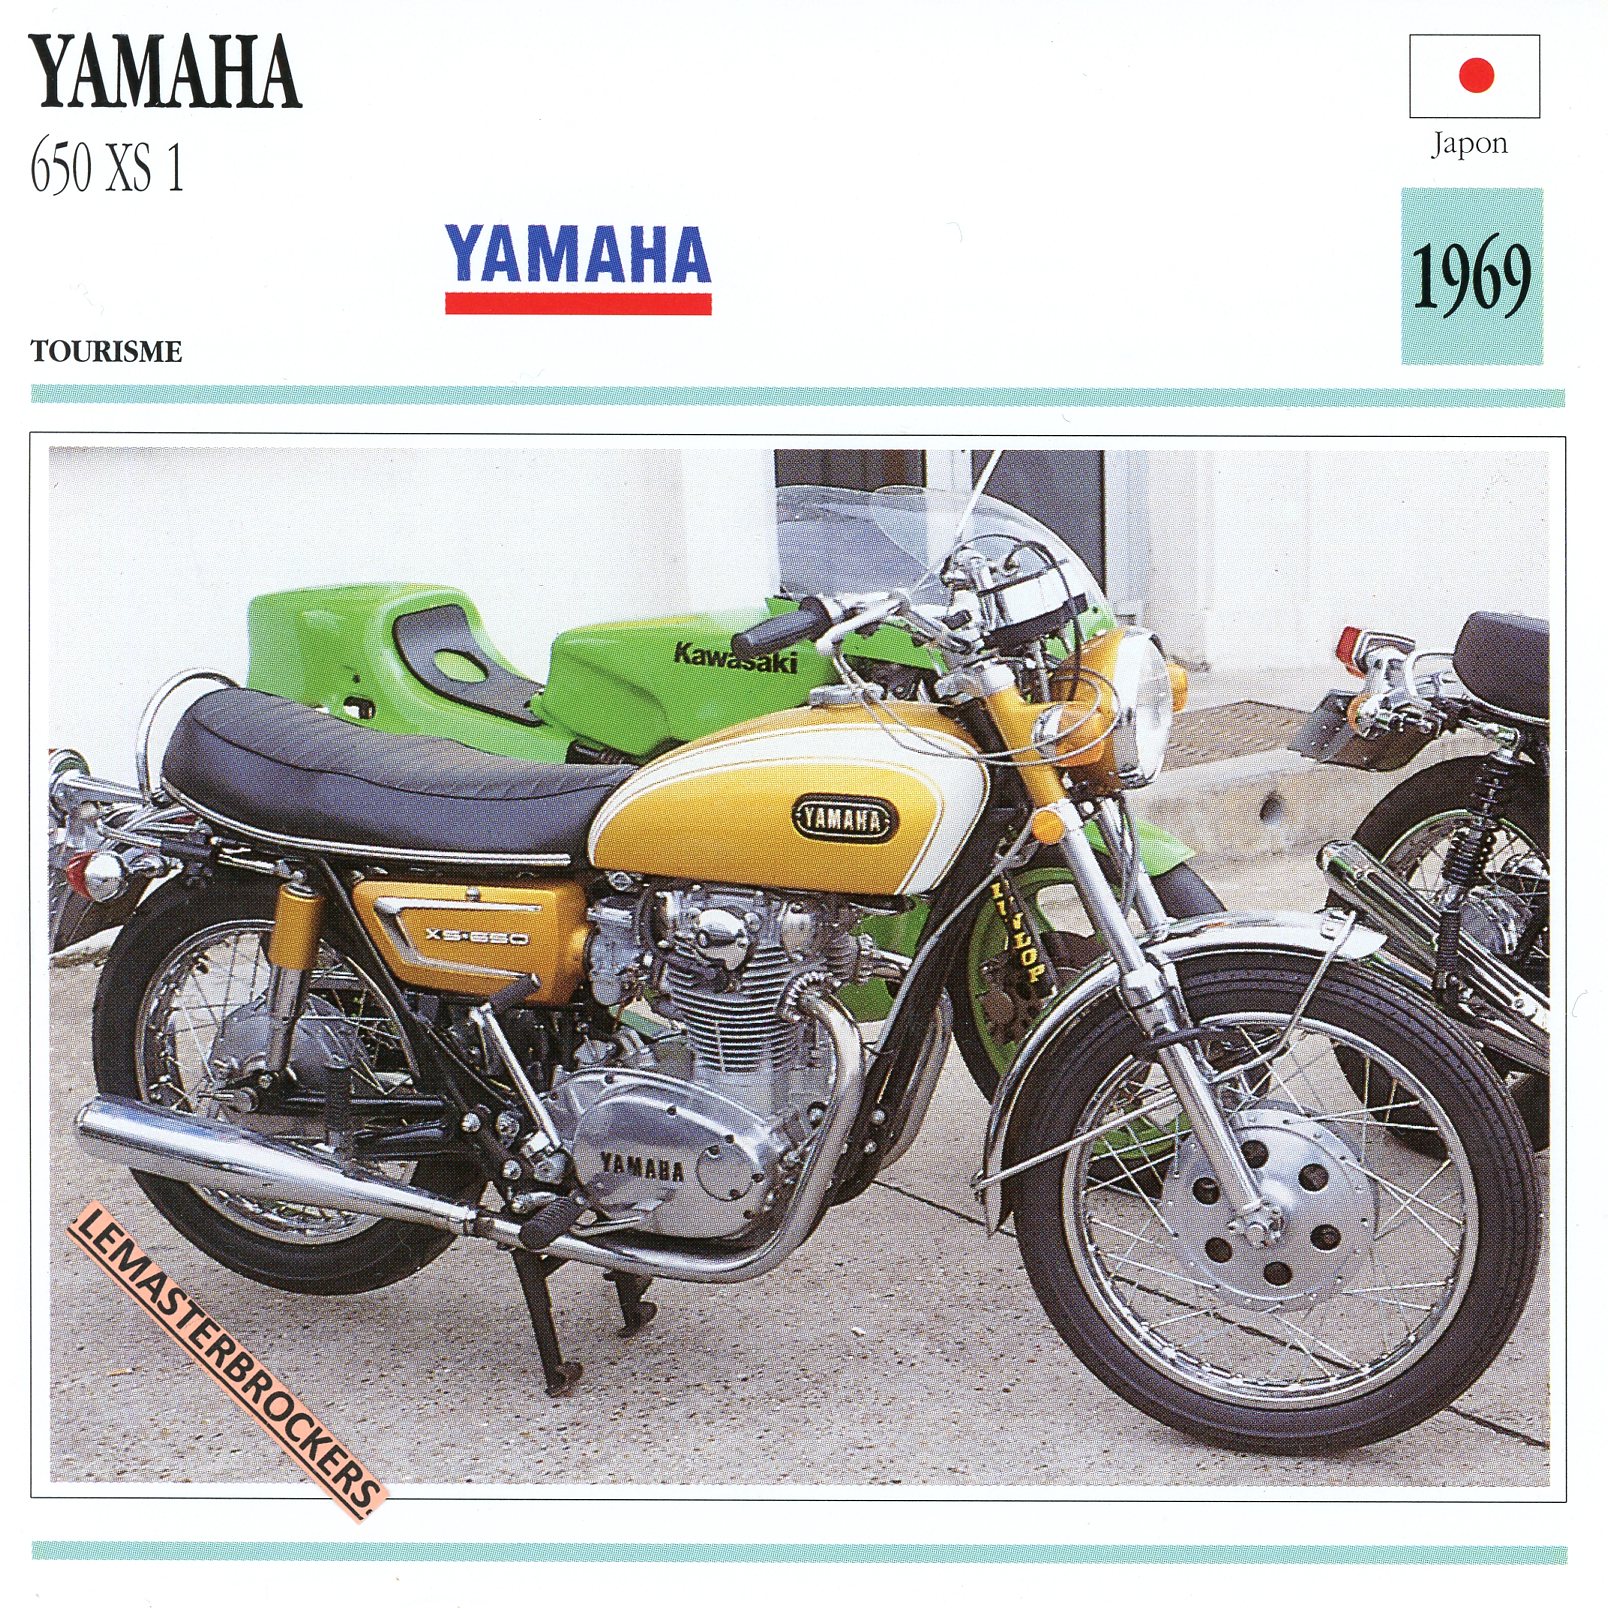 FICHE-MOTO-YAMAHA-XS650-1969-LEMASTERBROCKERS-CARD-MOTORCYCLE